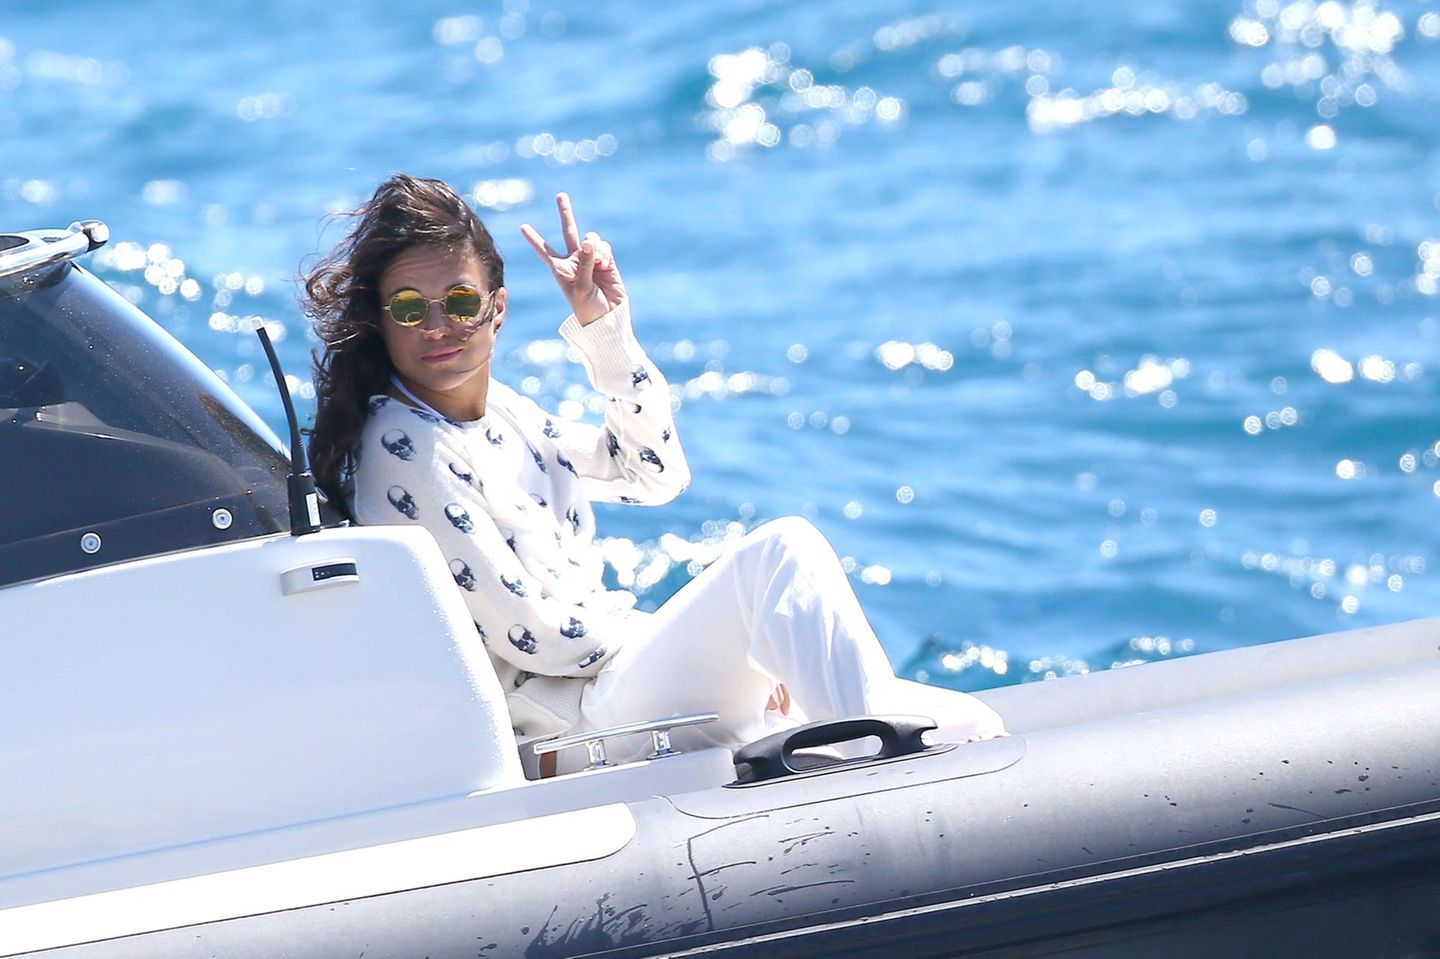 Für Michelle Rodriguez geht es auf dem Boot an der Croisette entlang.